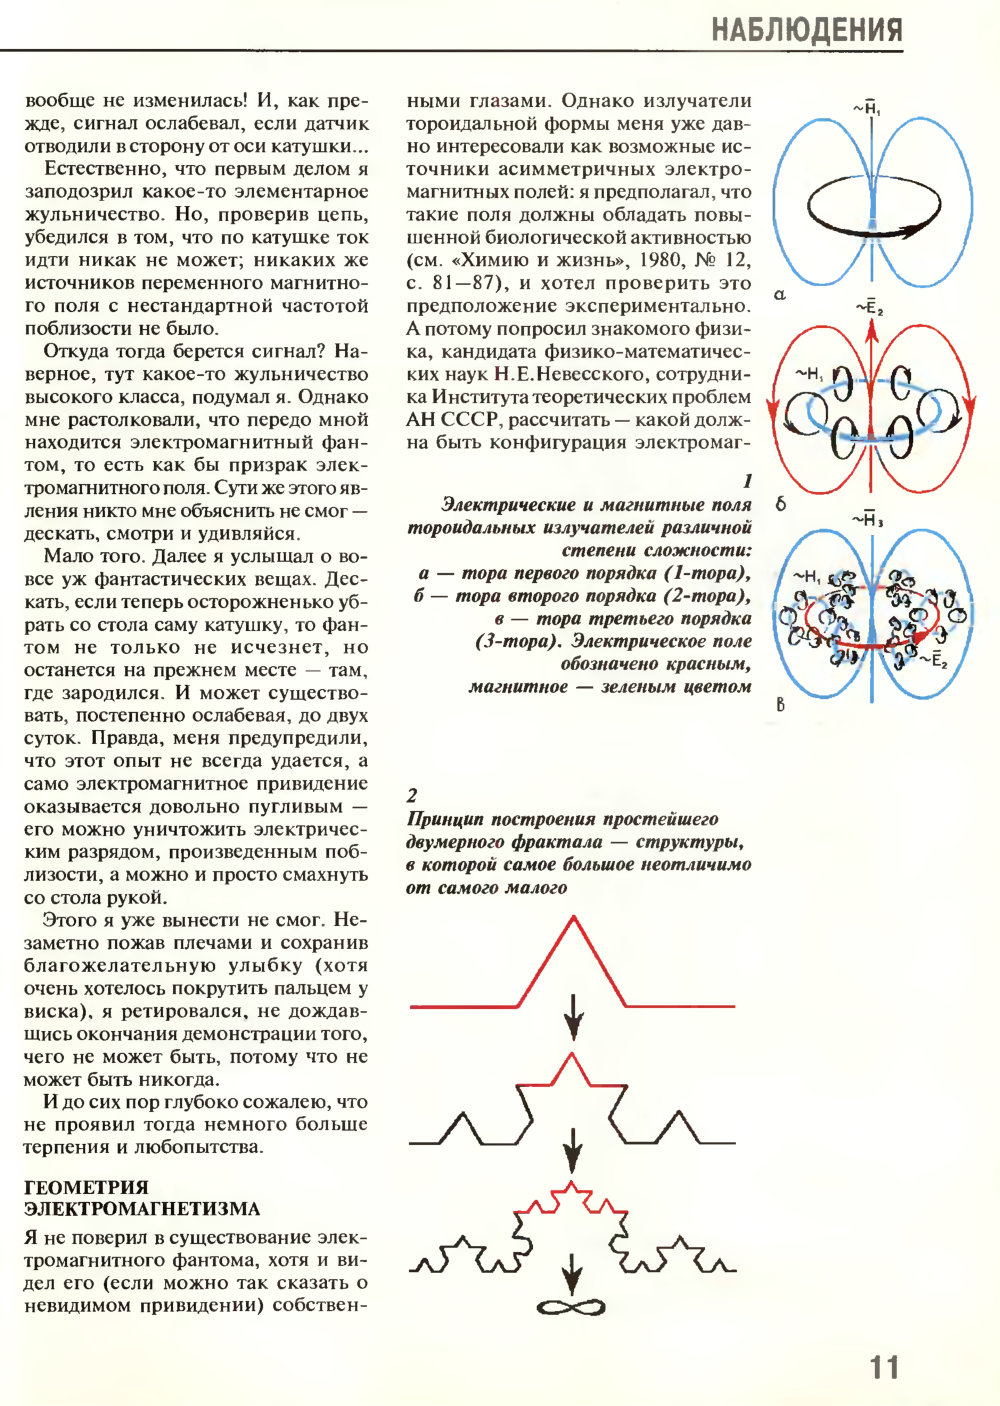 Игра в бублики. В.Е. Жвирблис. Химия и жизнь, 1995, №5, с.10-15. Фотокопия №2